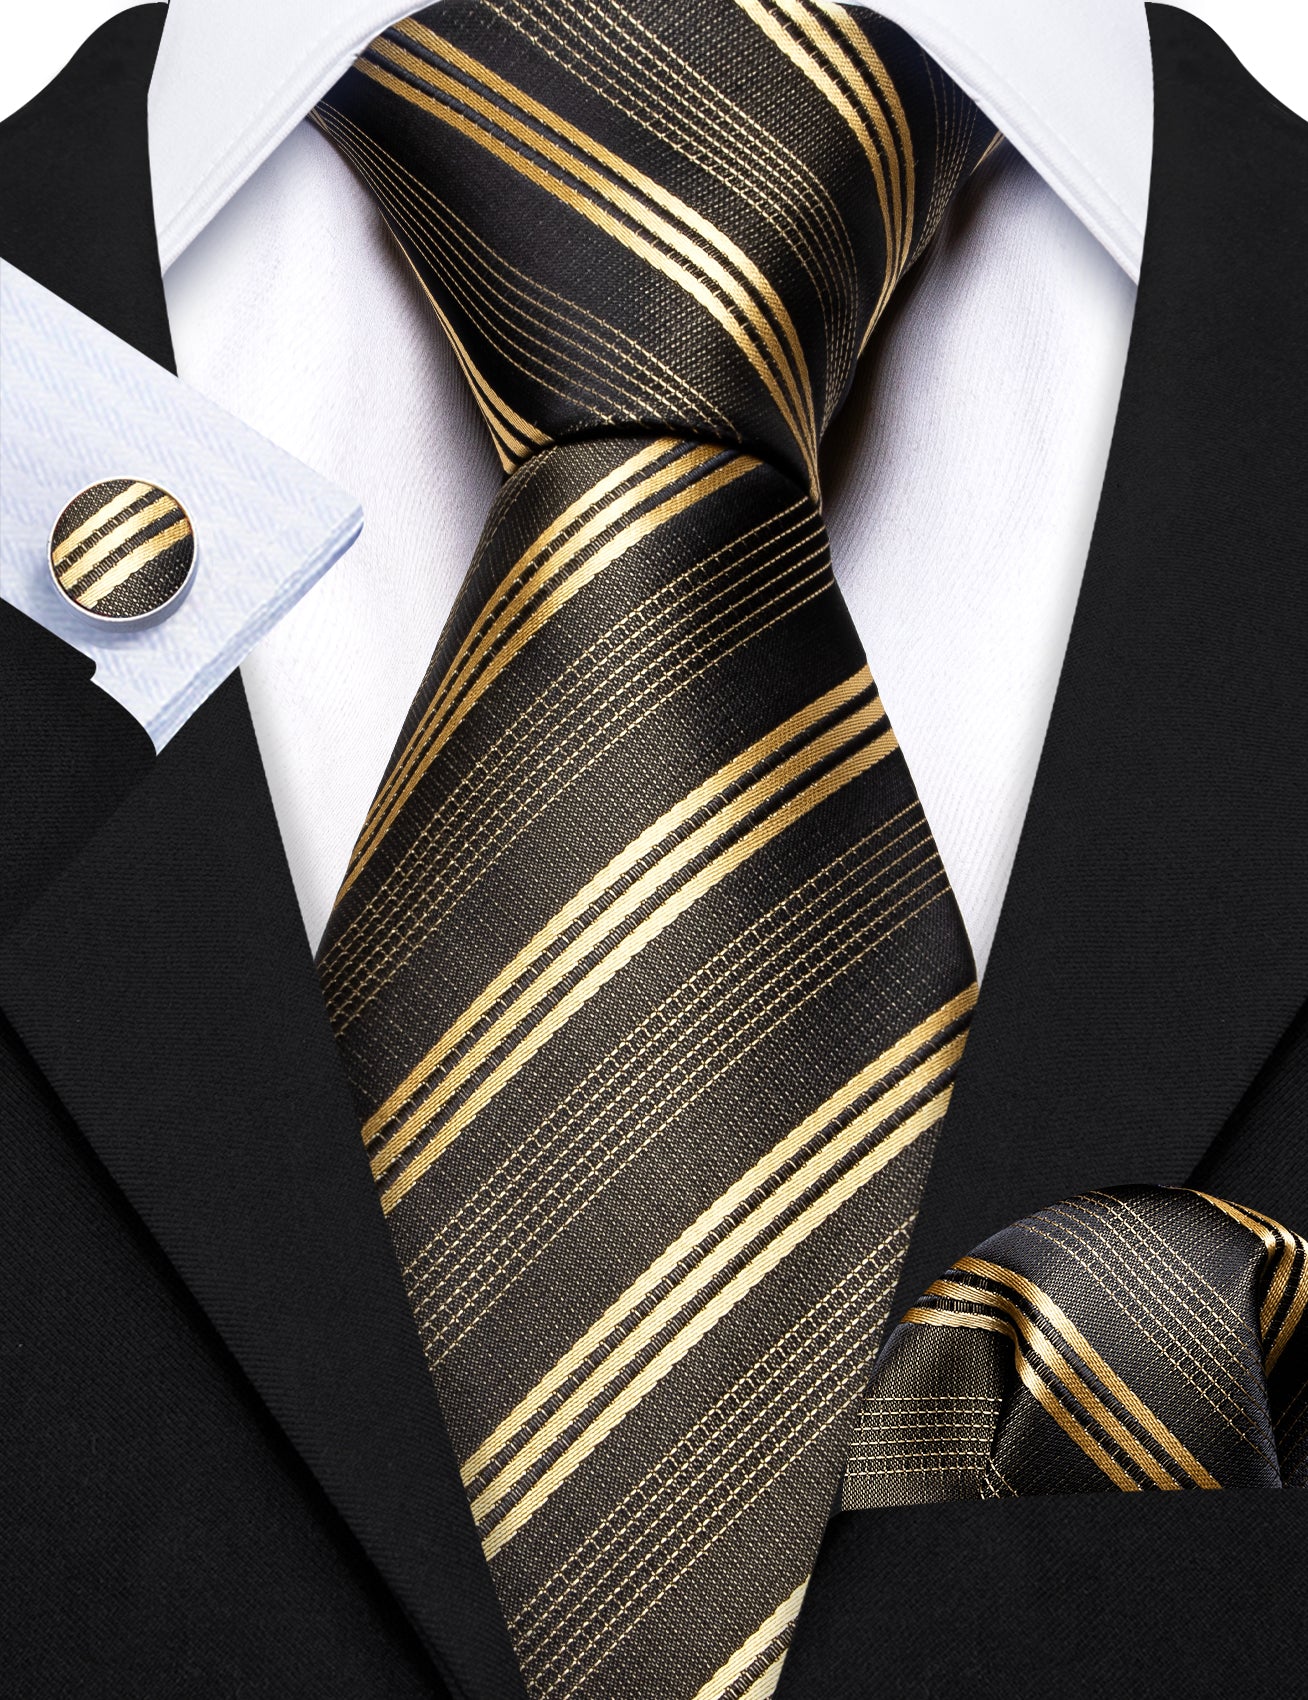 Green Gold Striped Silk Tie Handkerchief Cufflinks Set